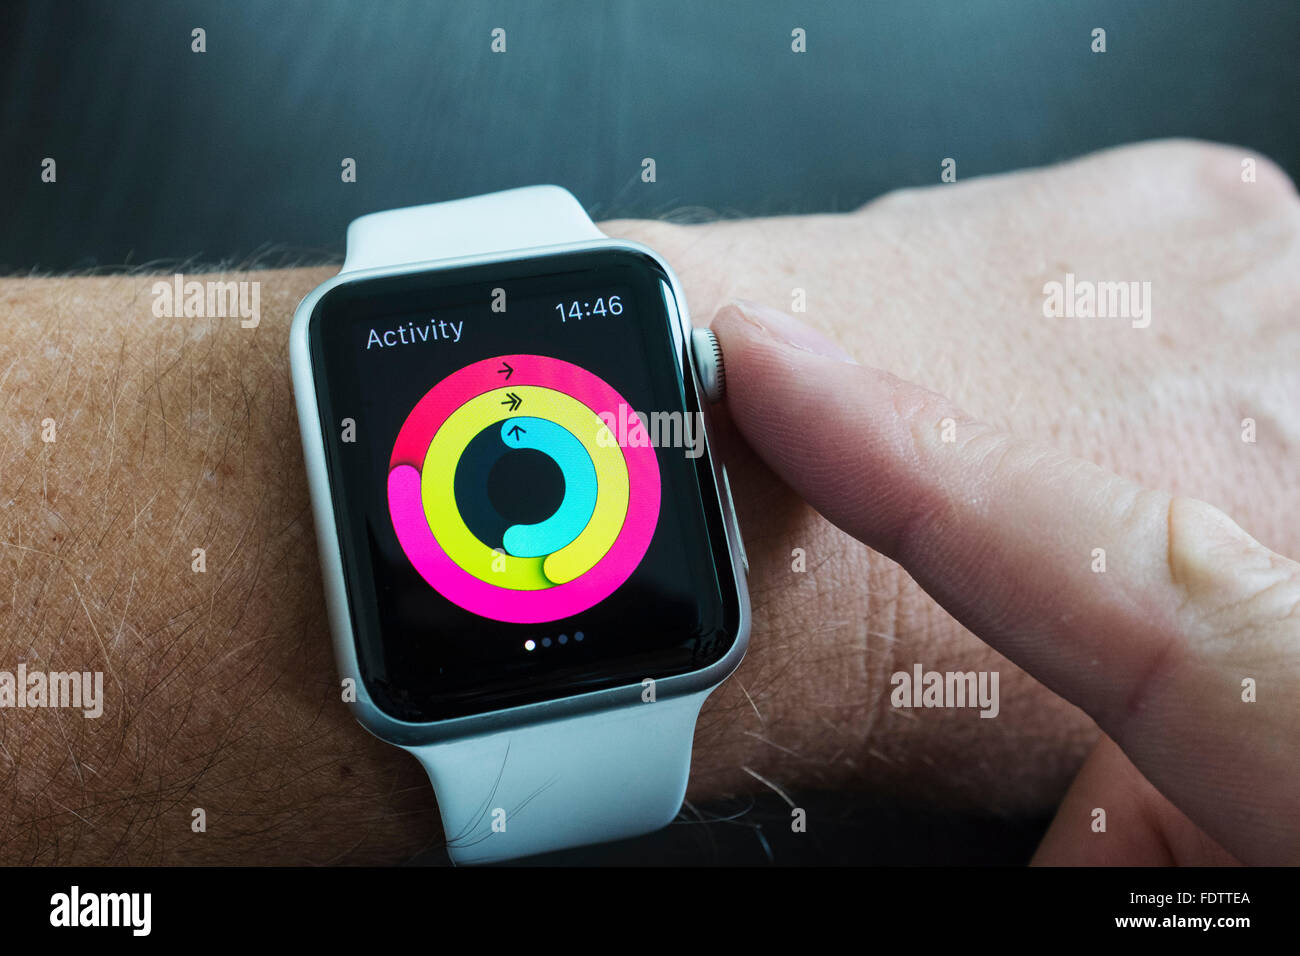 Detalle de salud app midiendo la actividad diaria en un Apple Watch Foto de stock